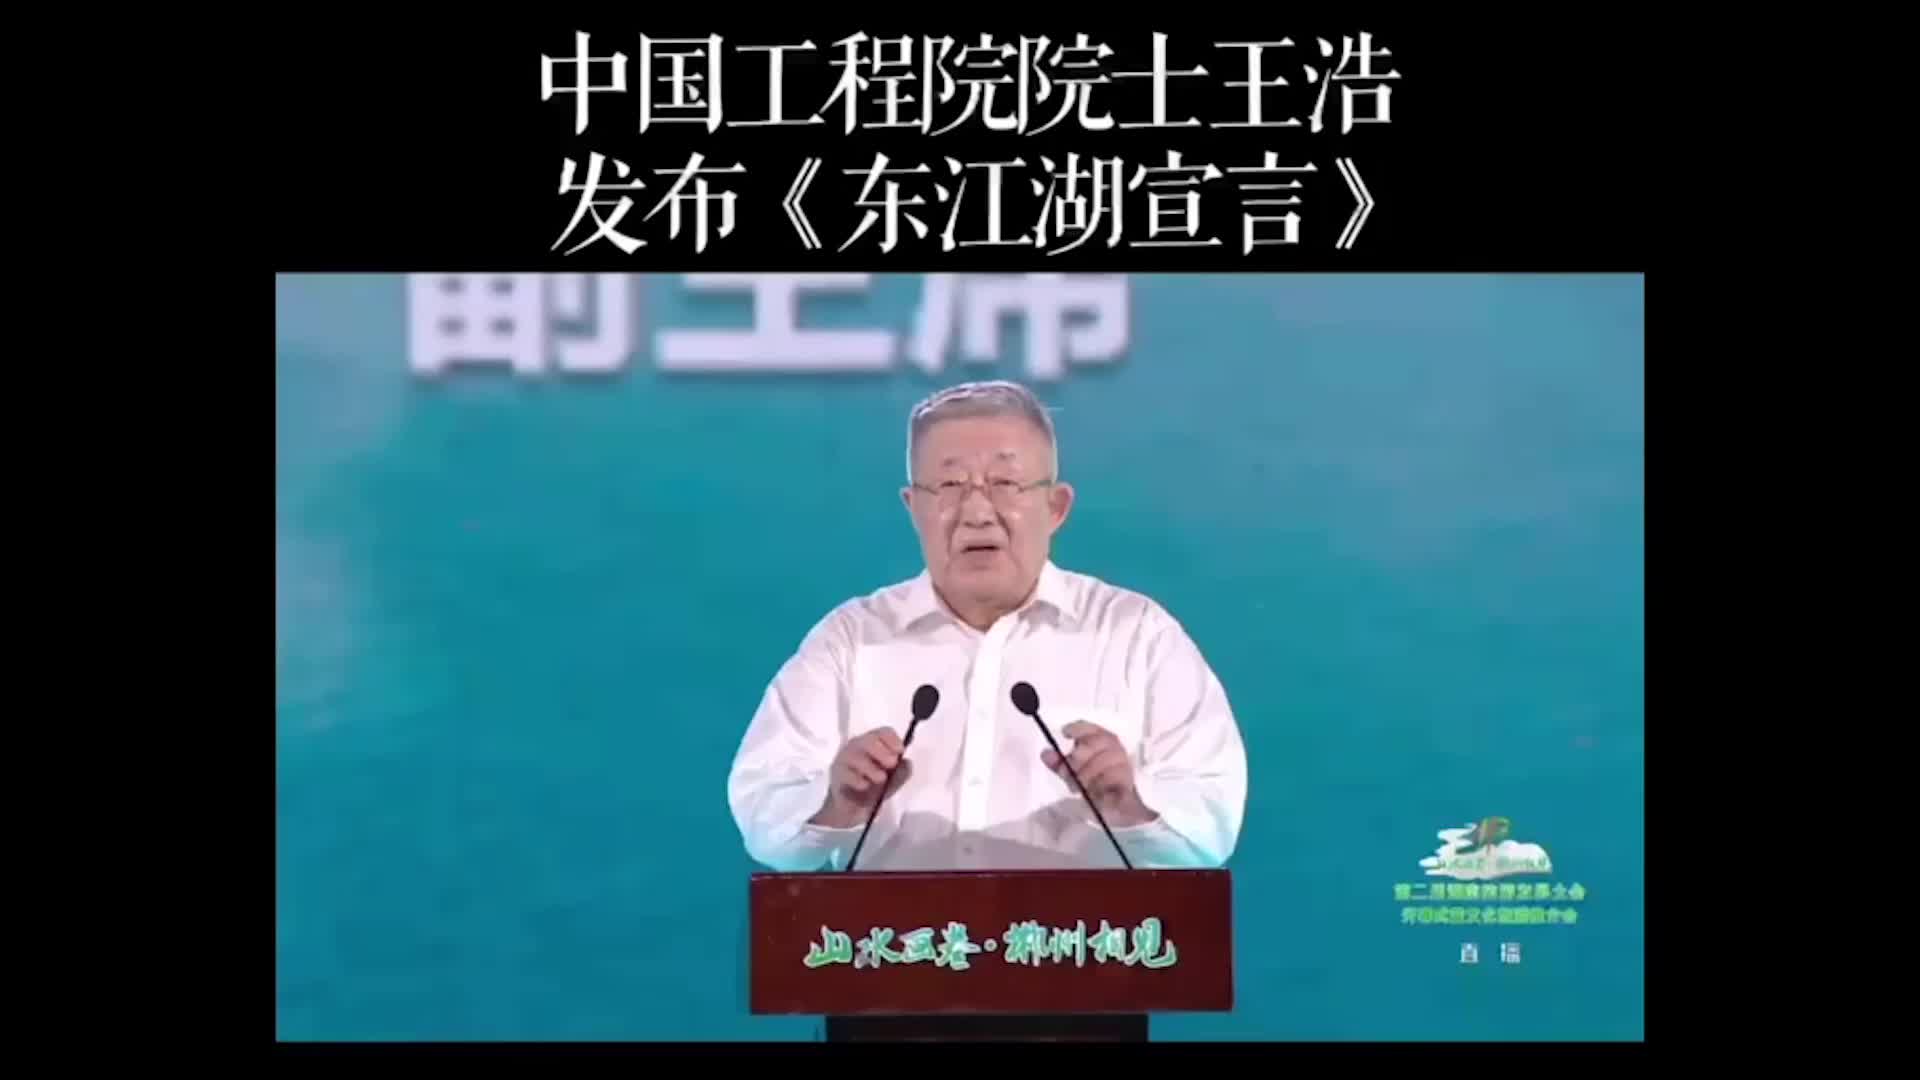 第二届湖南旅游发展大会开幕式  中国工程院院士王浩发布《东江湖宣言》